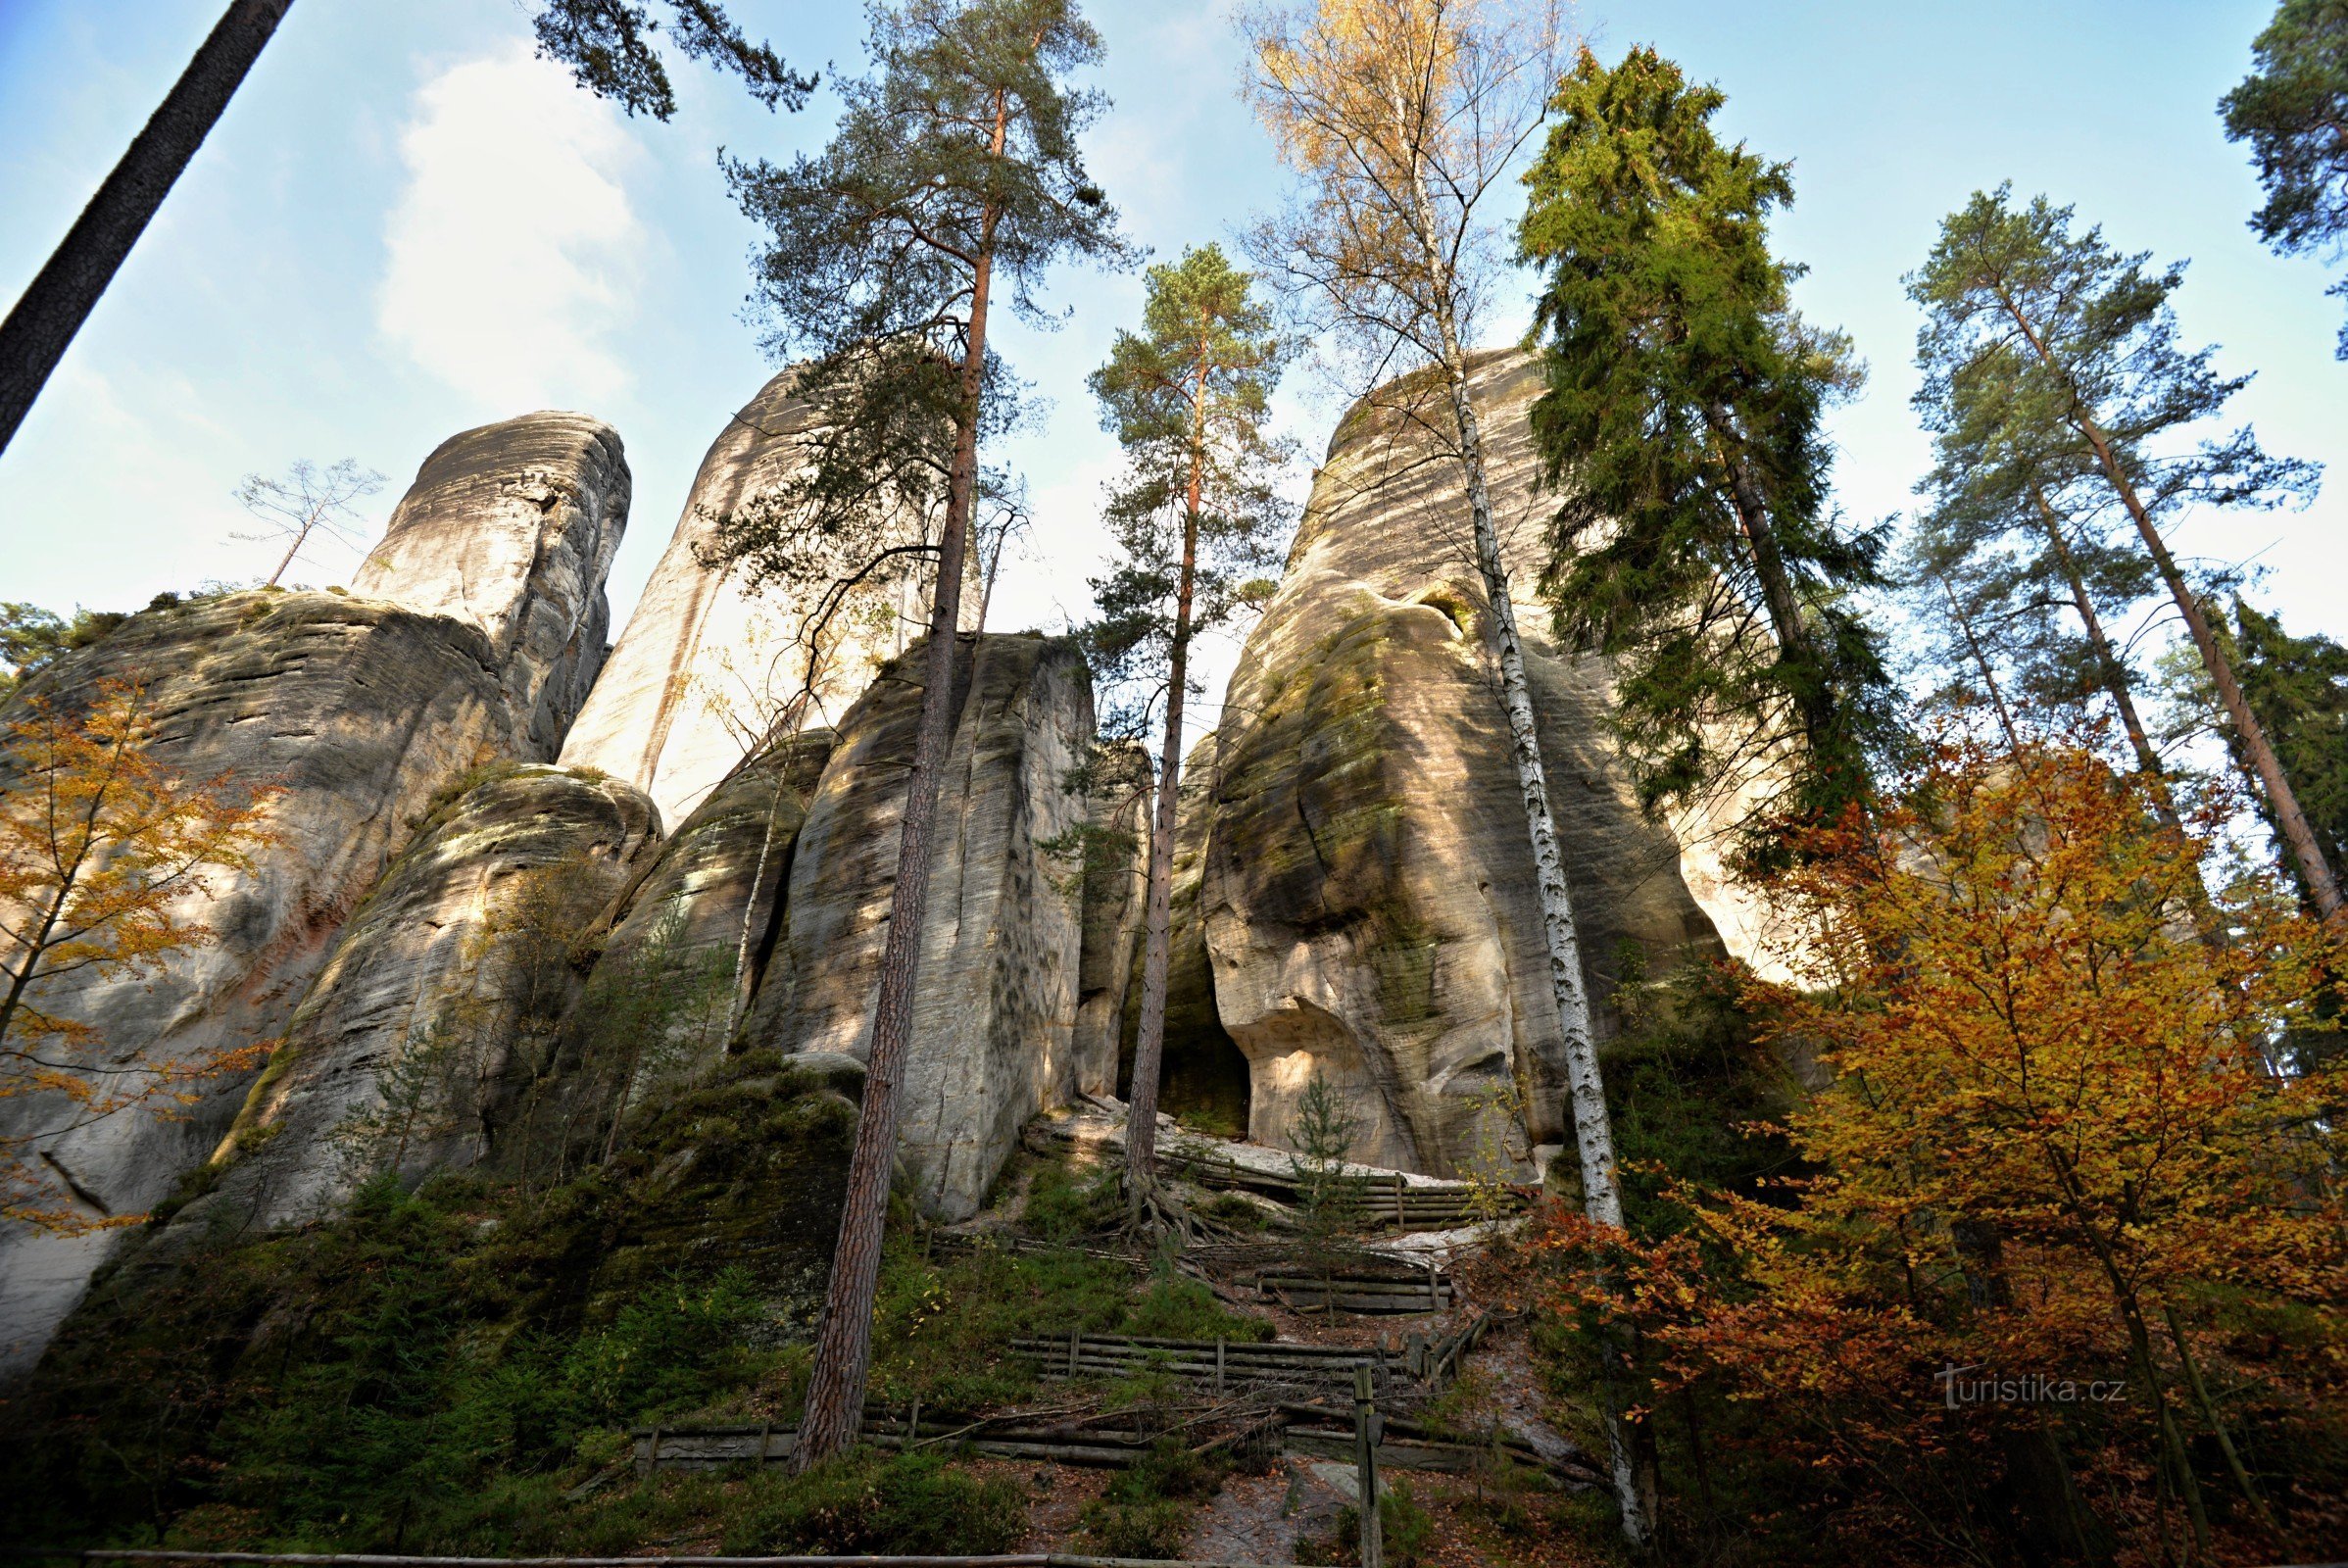 Adršpach Rocks